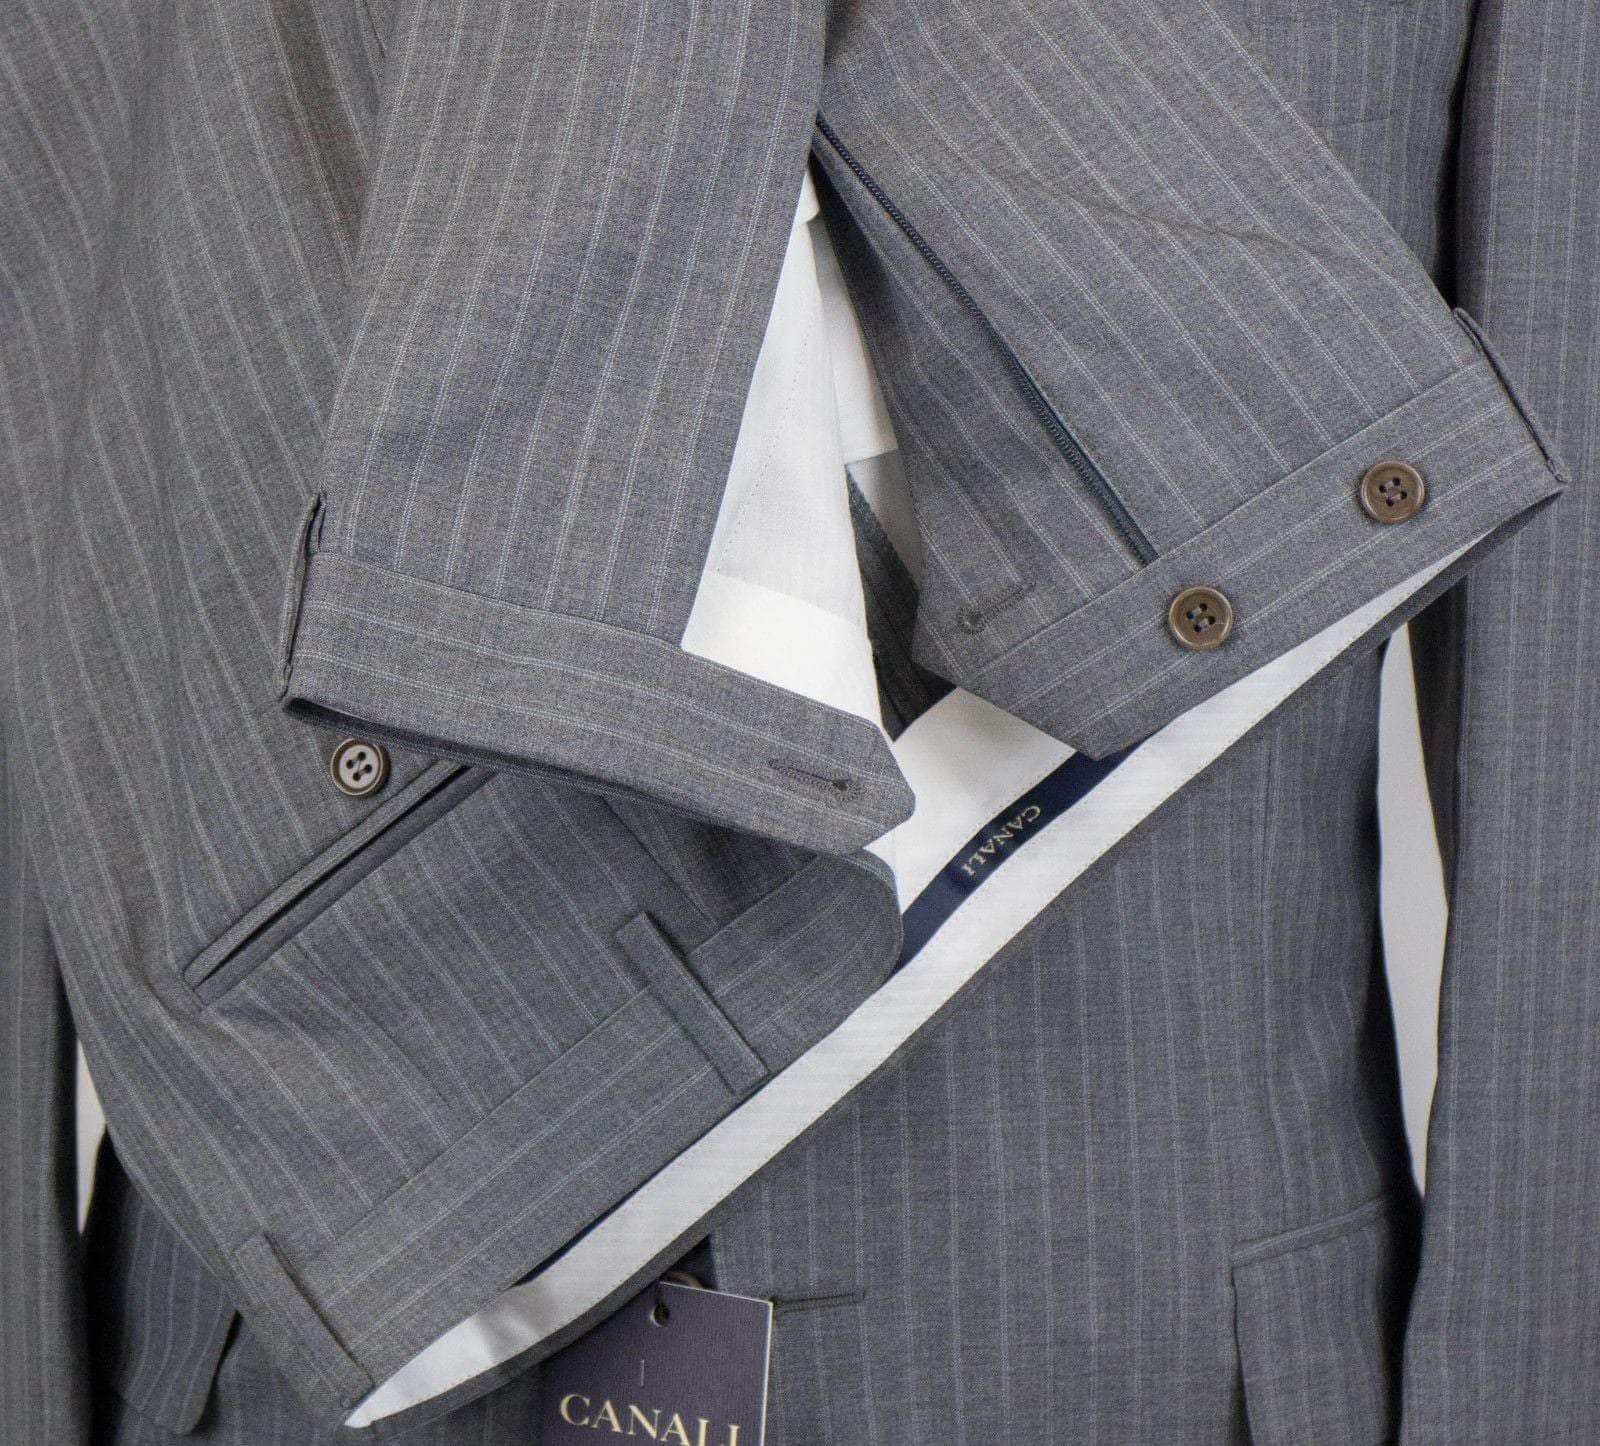 Canali Suits 38 Drop 4 Striped Wool 3 Button Suit - Gray 39C-38/NE 39C-38/NE